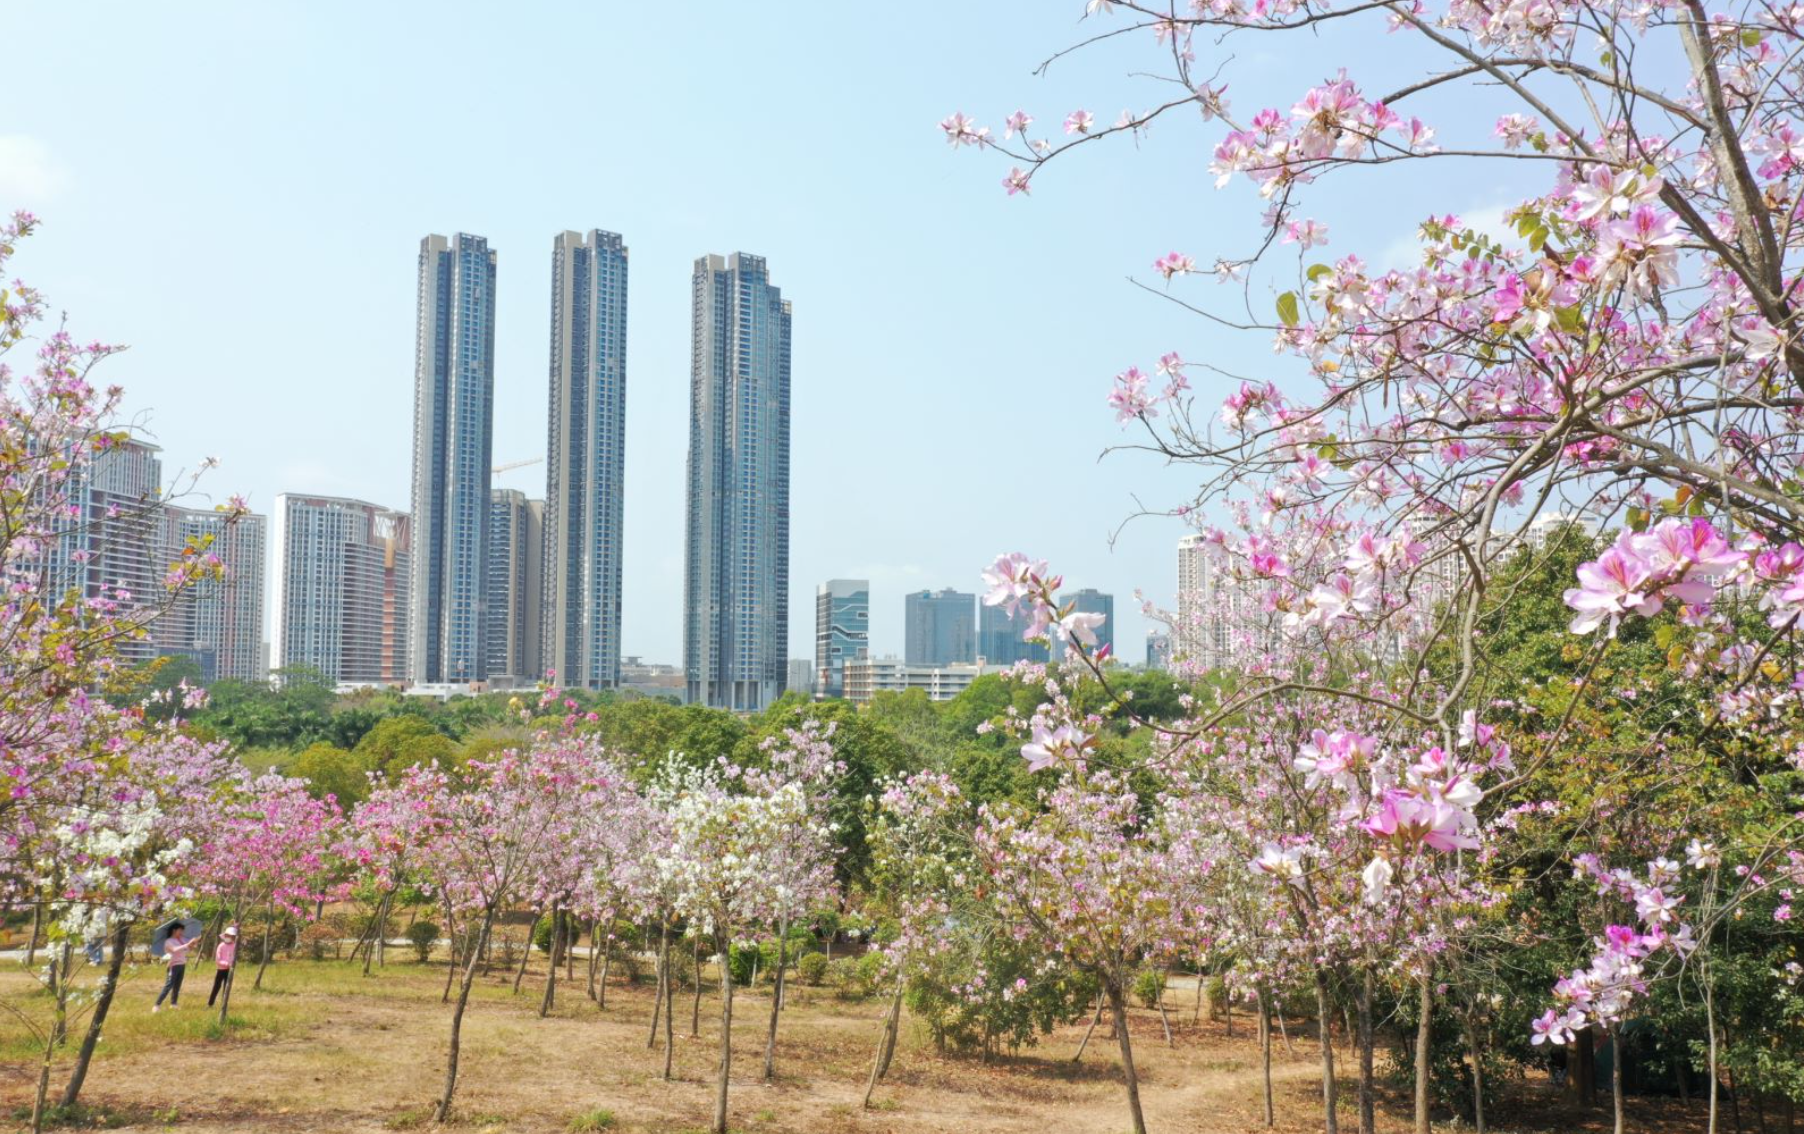 日前,记者获悉,位于深圳坪山区的聚龙山生态公园樱花谷的樱花迎来盛开